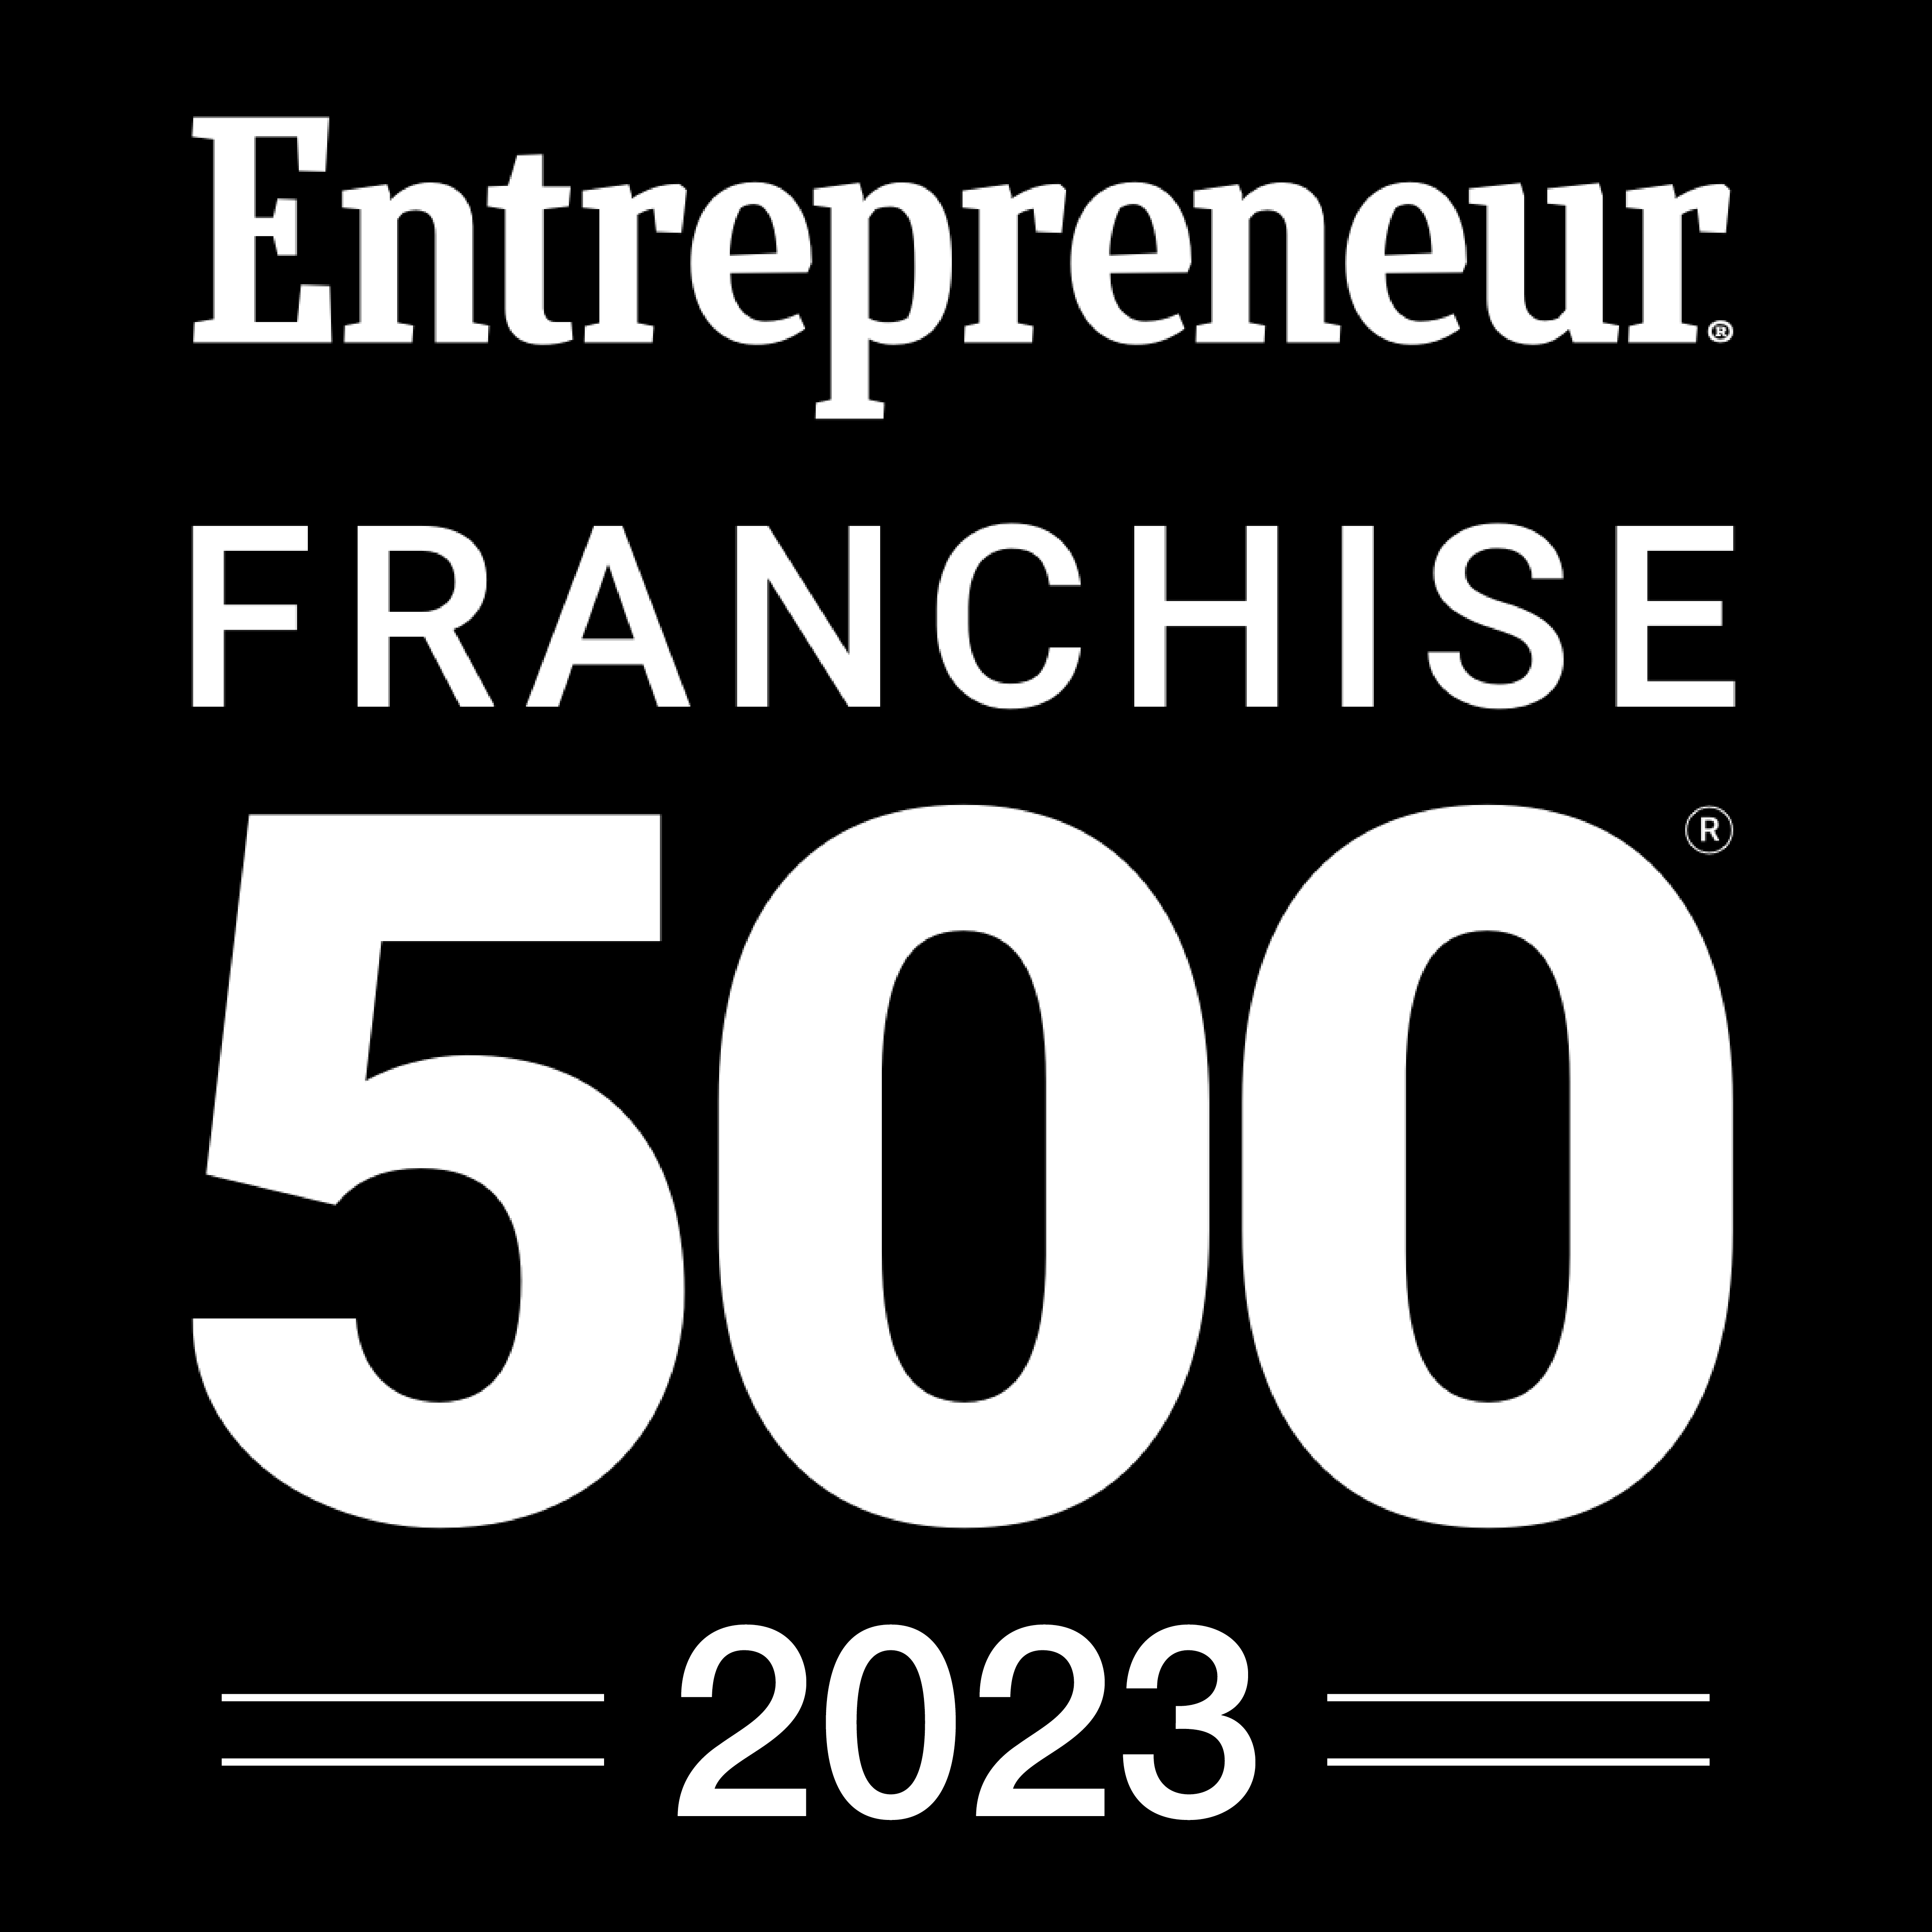 Entrepreneur Franchise 500 2023